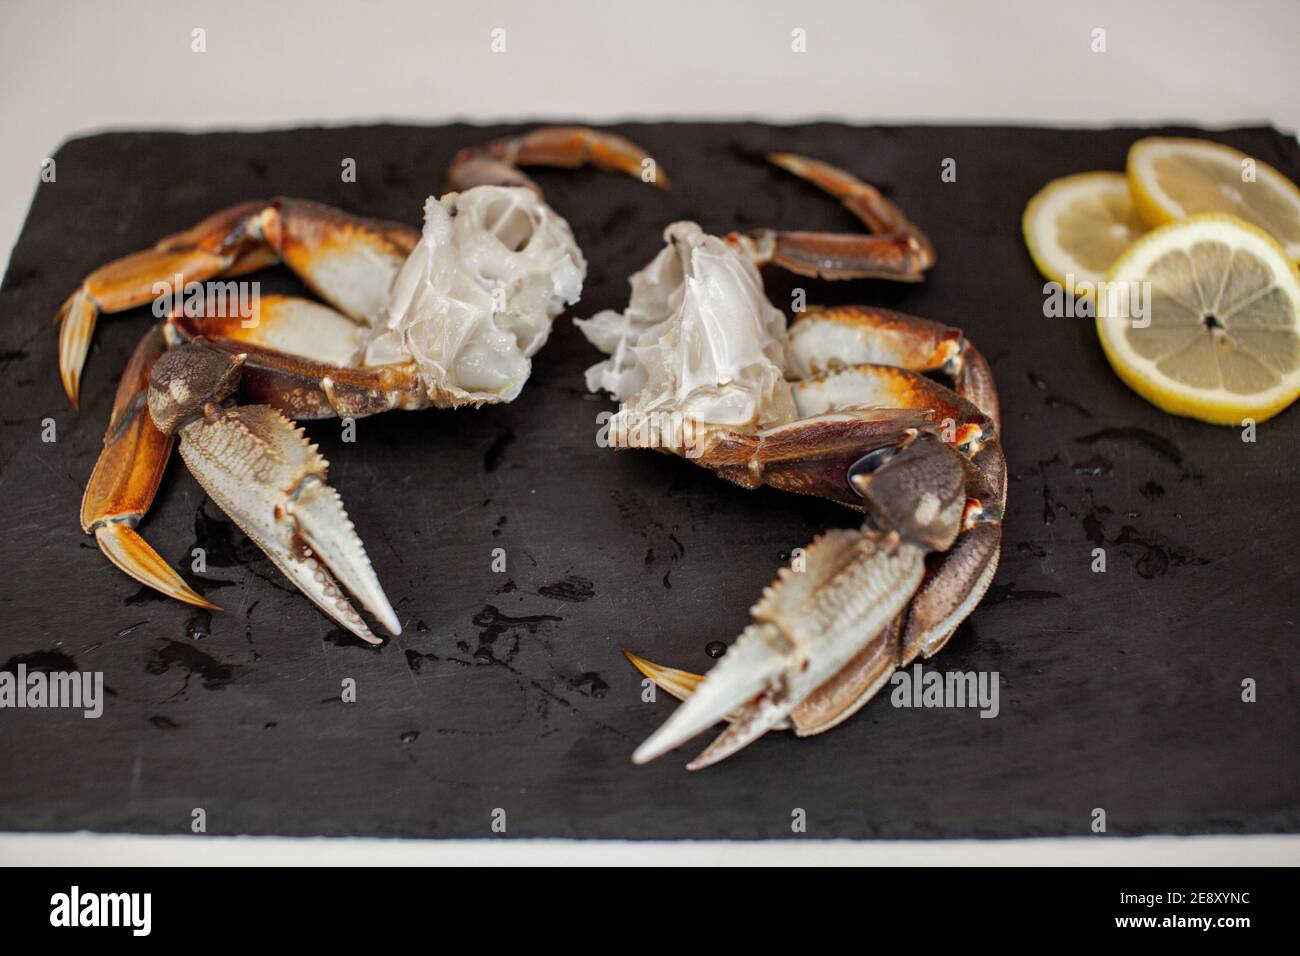 Les pattes de crabe Dungeness crues, nettoyées et non cuites s'assoient sur un plateau dans la cuisine prête à être cuites pour le dîner Banque D'Images